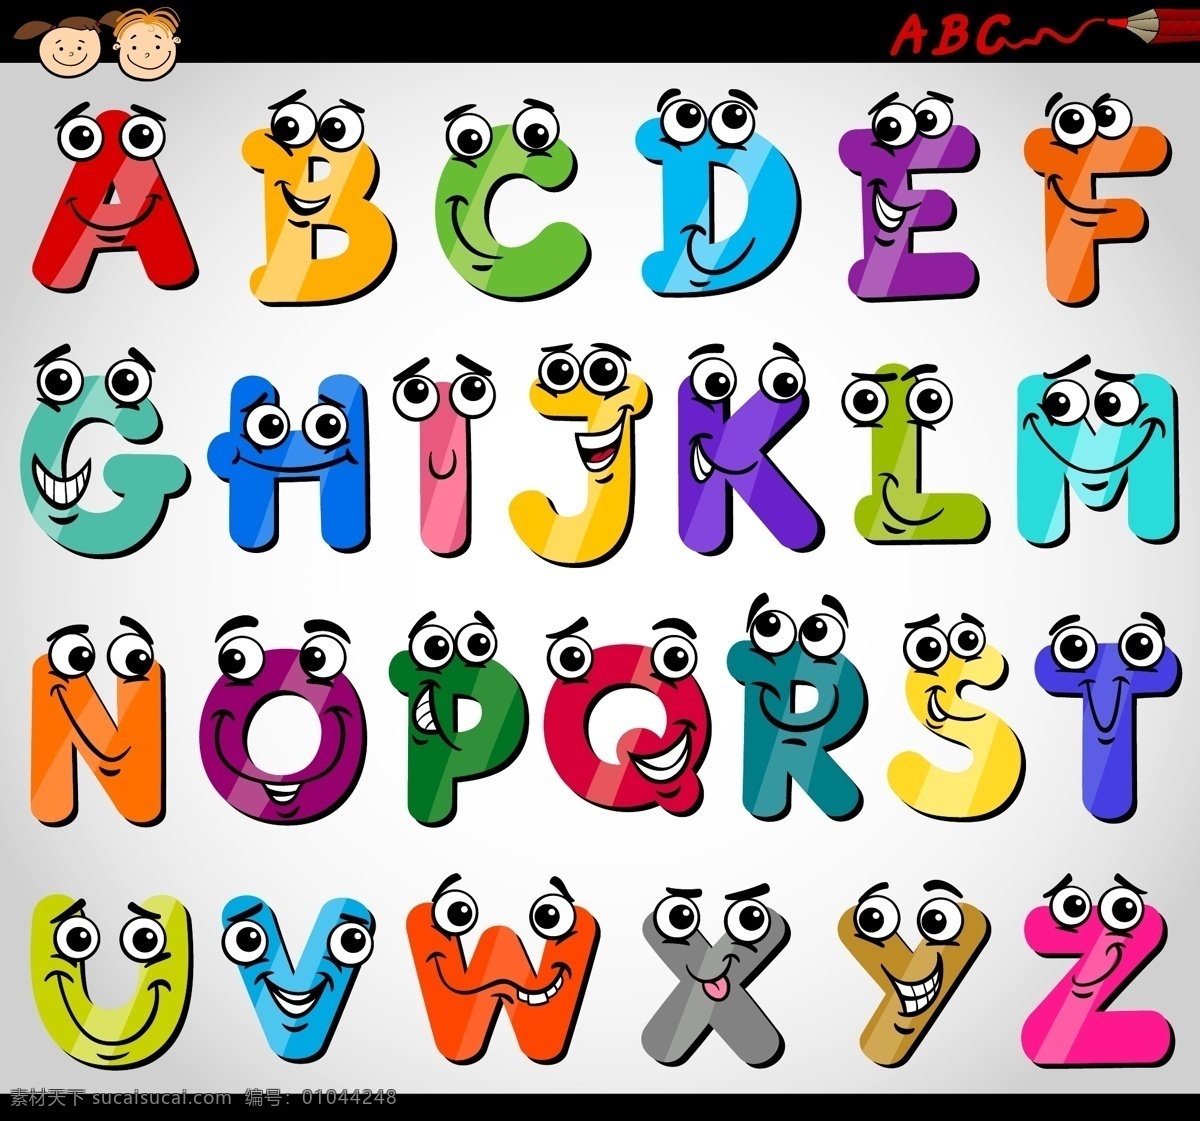 卡通字母 字母表 字母设计 英文字母 手写 字母 英语字母表 英文 拼音 创意字母 时尚字母 时尚 手绘字母 装饰 字母主题 矢量